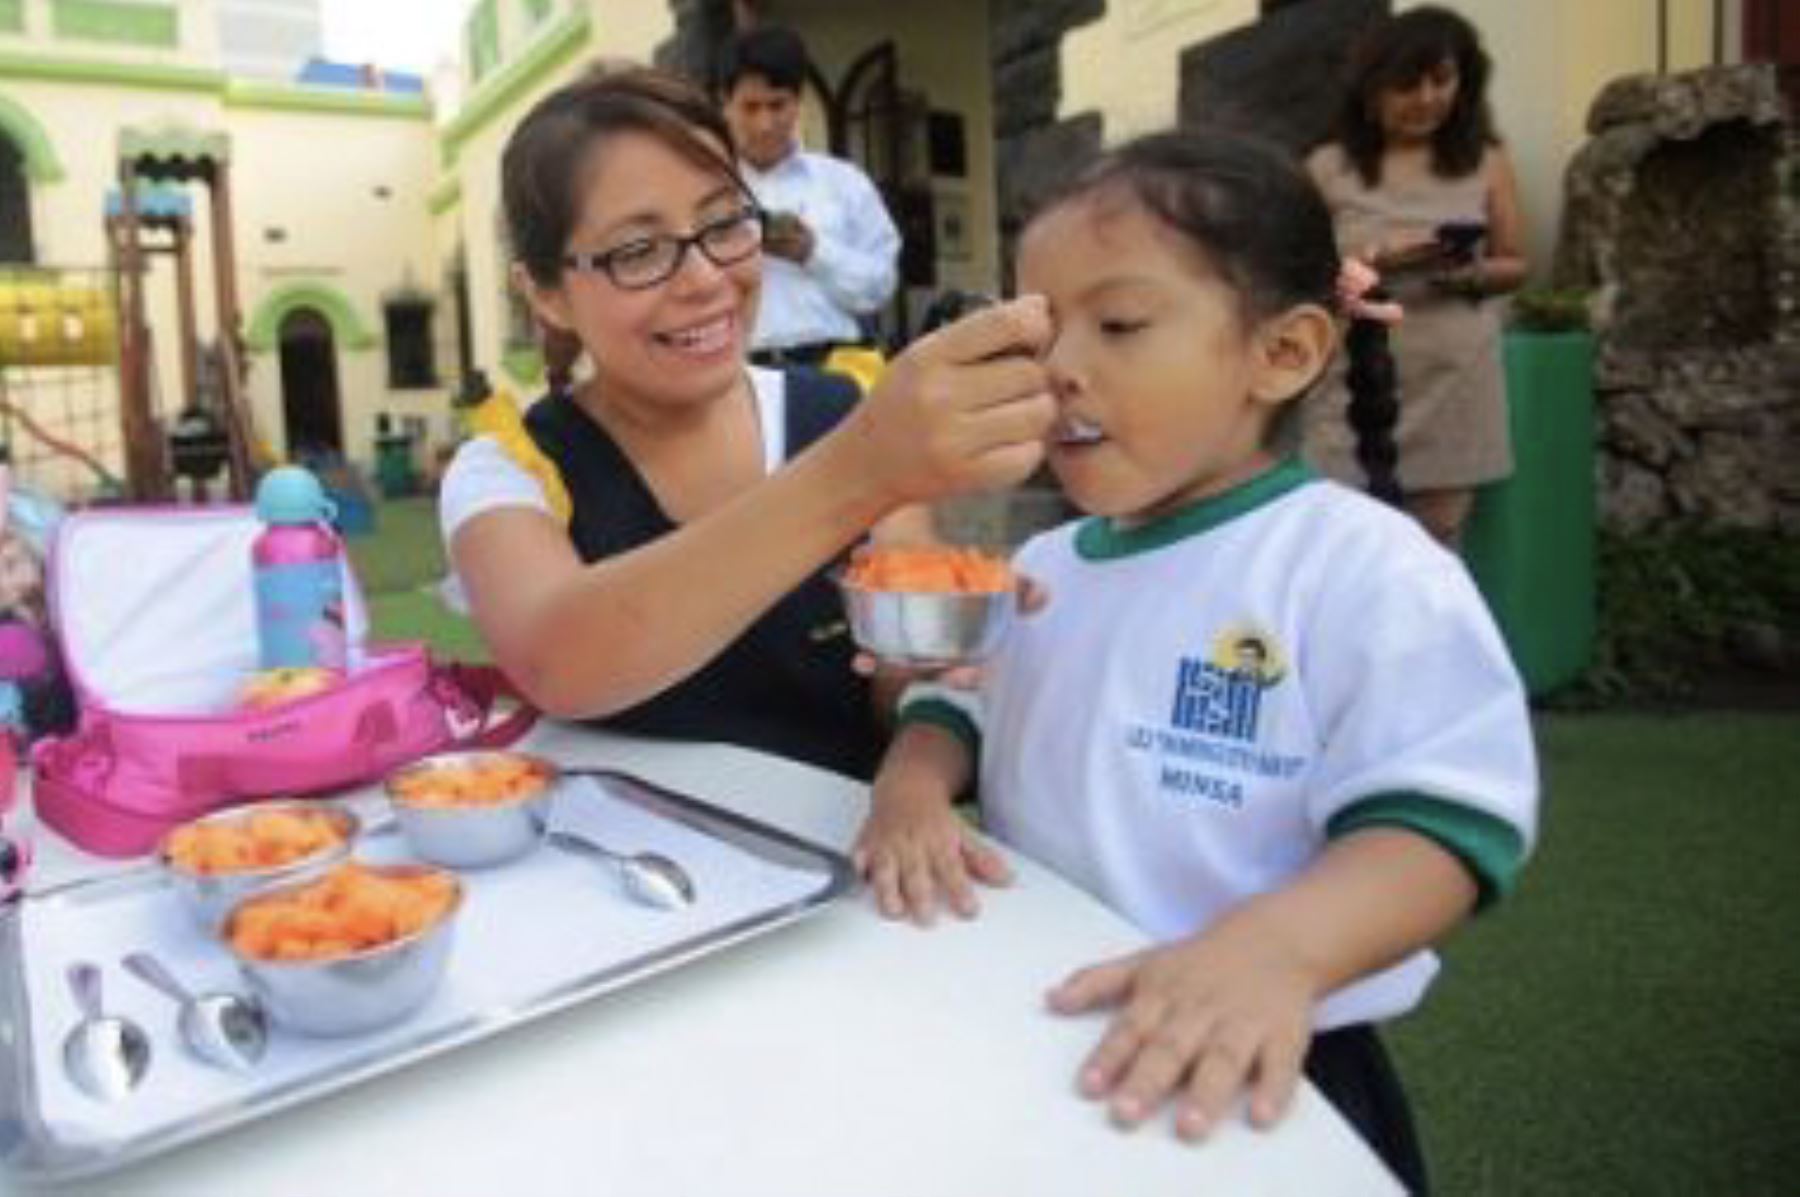 Las municipalidades de Lima Metropolitana pueden desarrollar campañas para reducir la malnutrición infantil en sus distritos, sostiene Colegio de Nutricionistas de Lima. ANDINA/ Difusión.